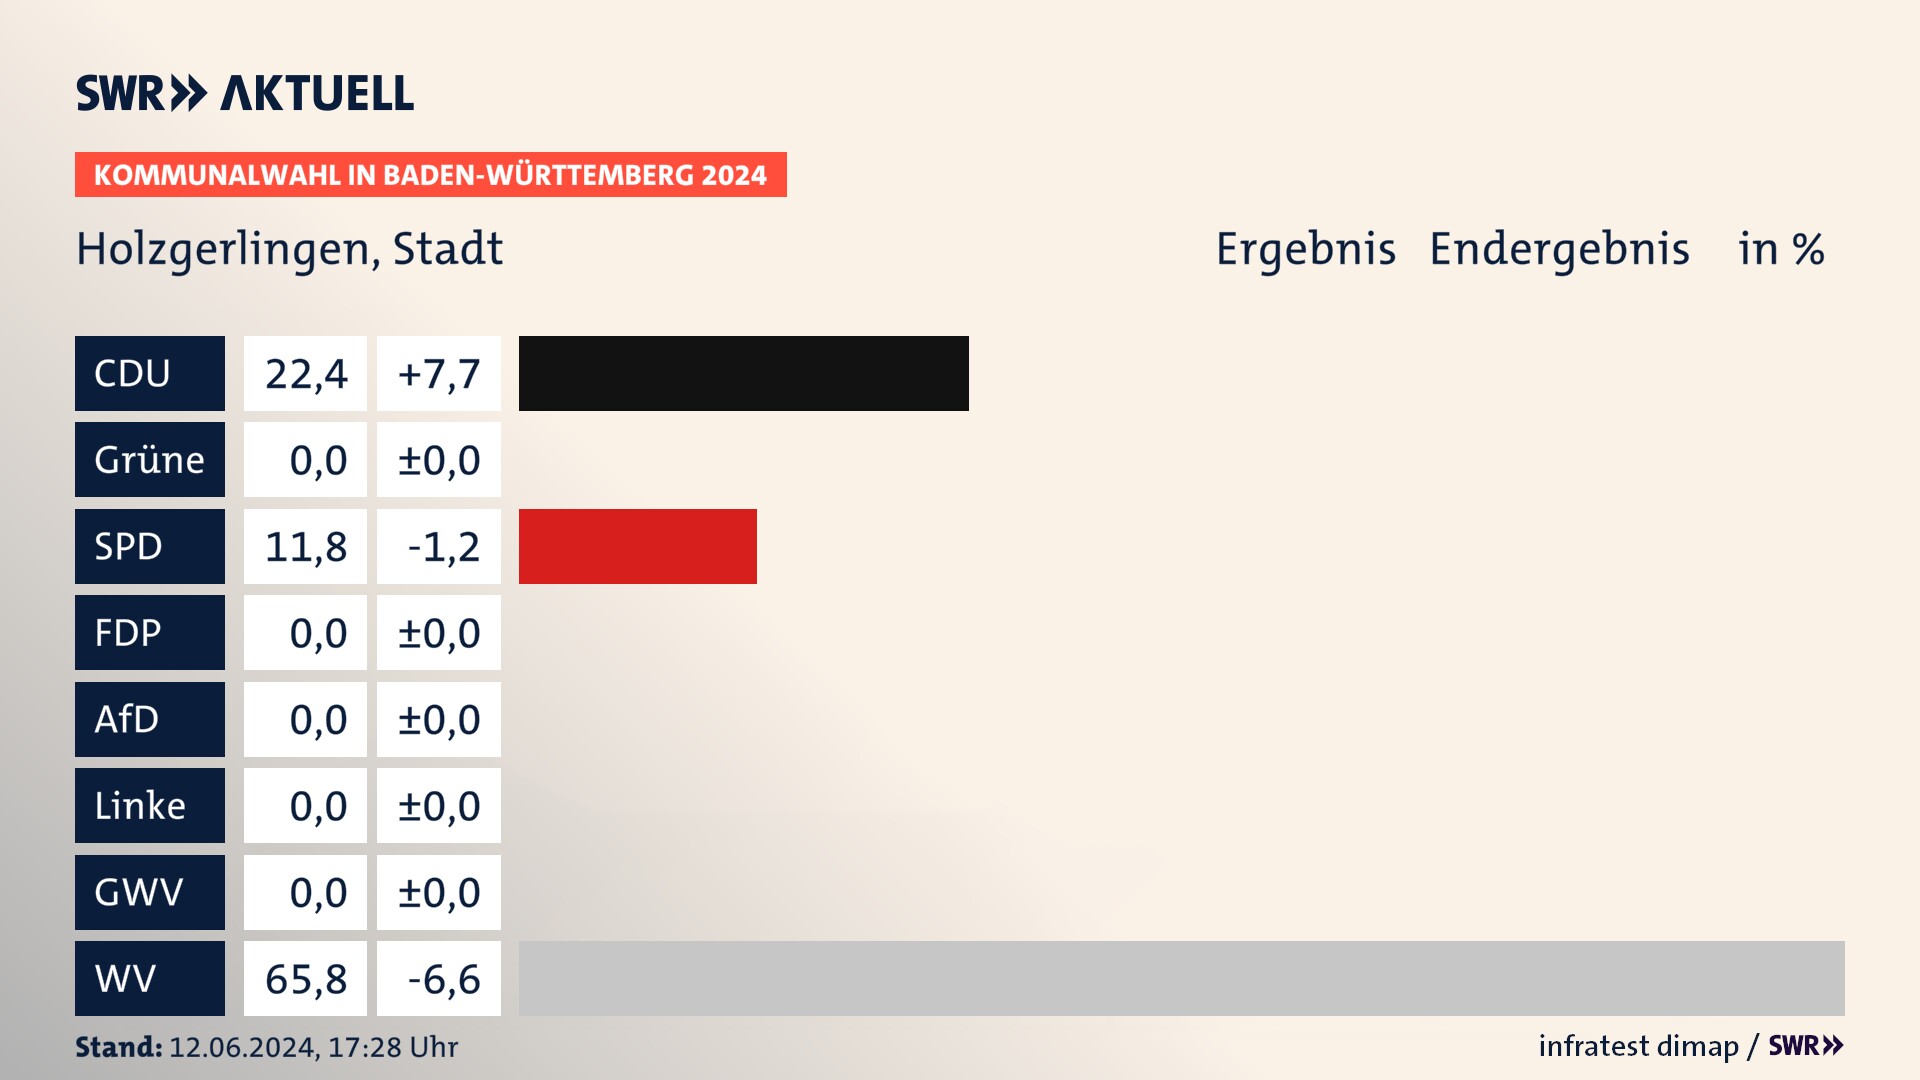 Kommunalwahl 2024 Endergebnis Zweitstimme für Holzgerlingen. In Holzgerlingen, Stadt erzielt die CDU 22,4 Prozent der gültigen  Stimmen. Die SPD landet bei 11,8 Prozent. Die Wählervereinigungen erreichen 65,8 Prozent.